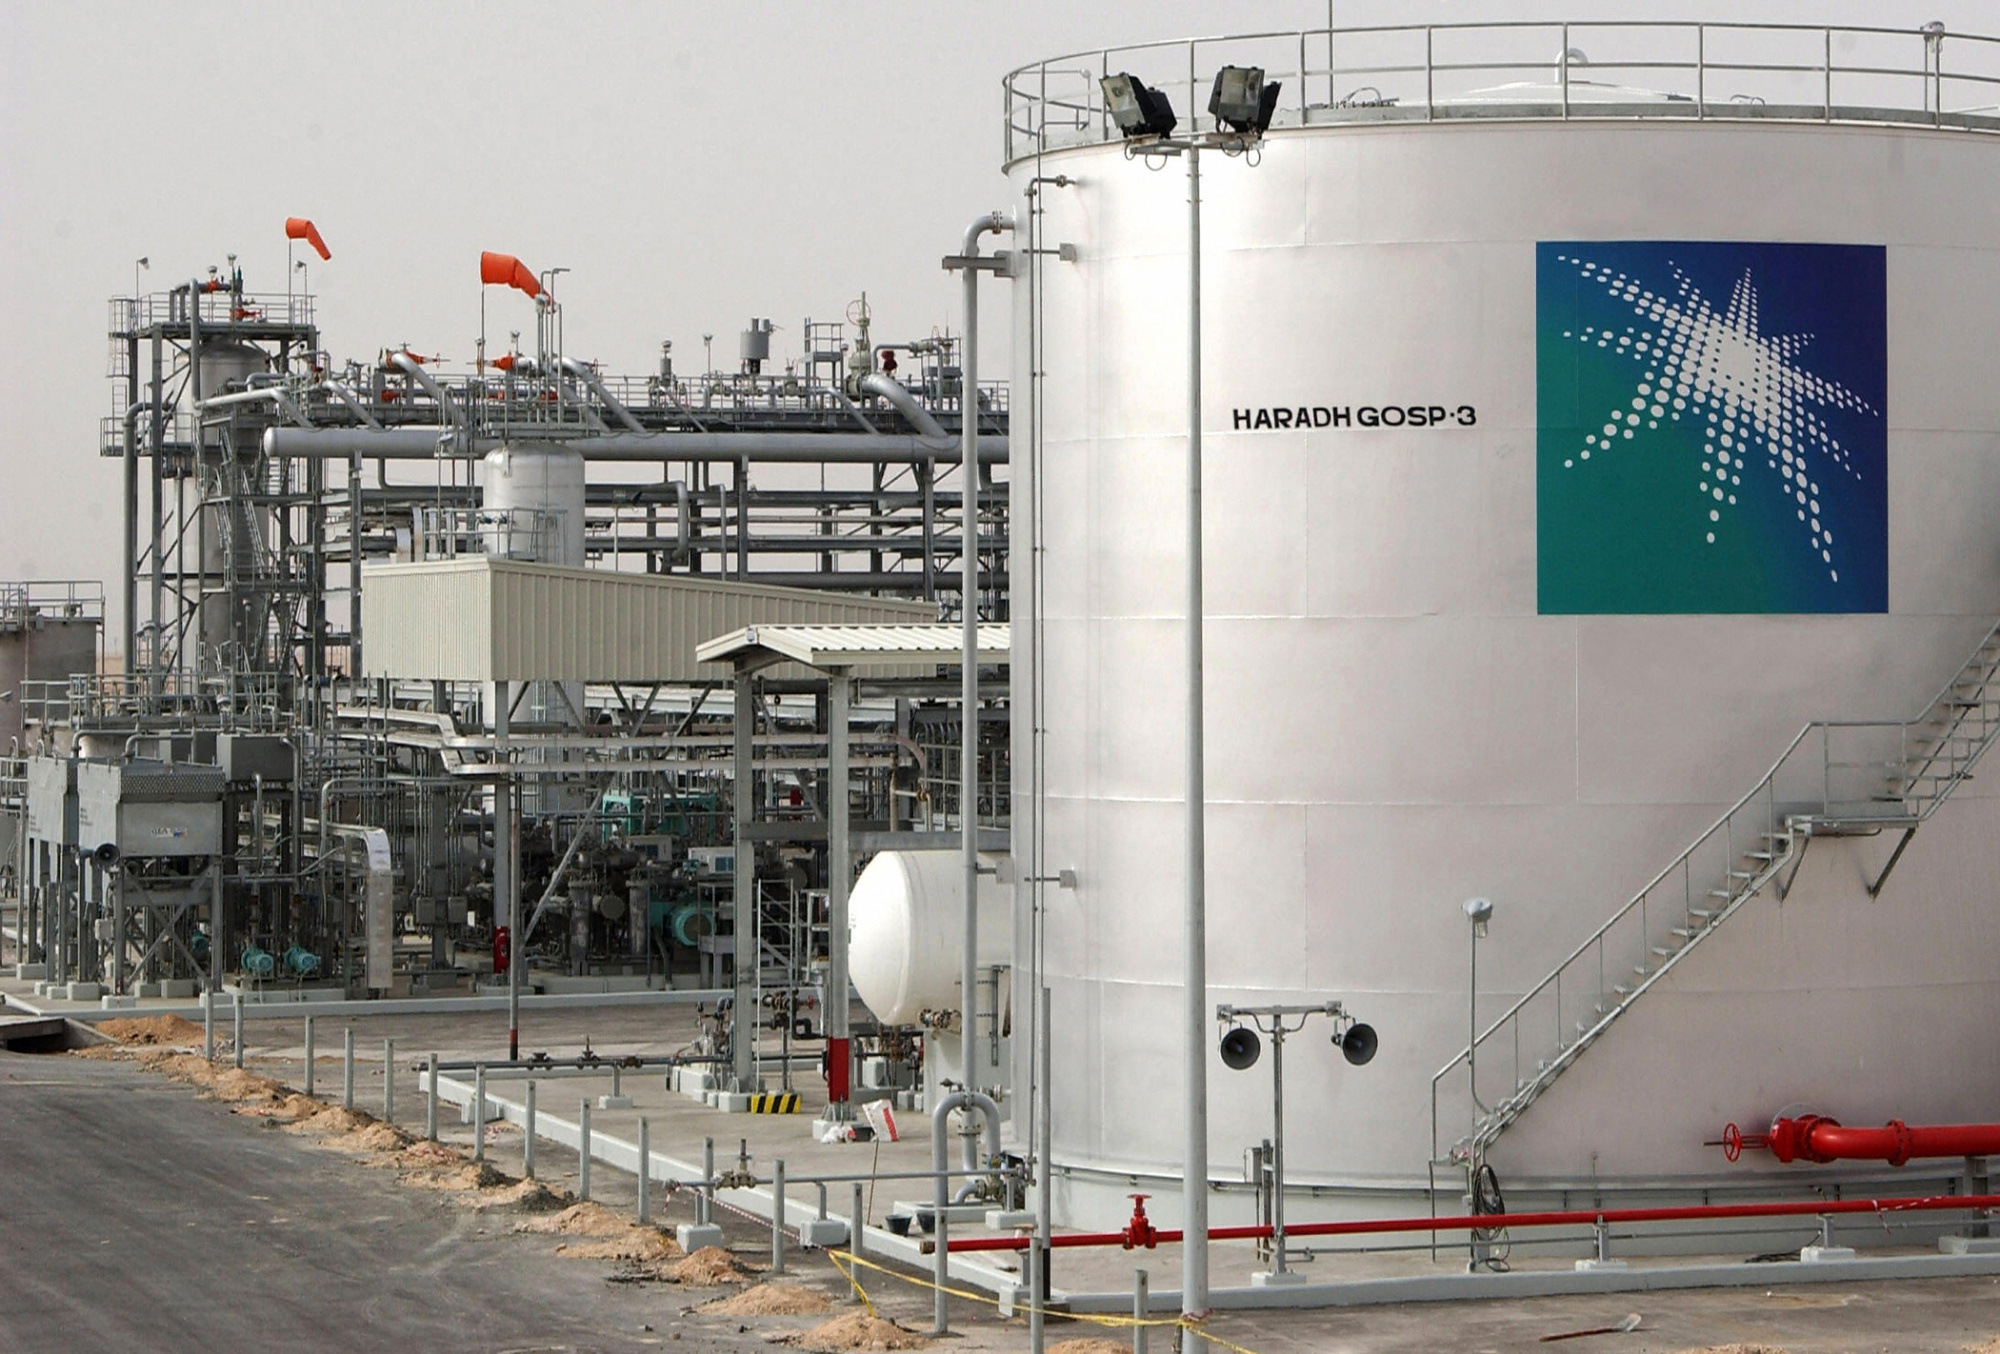 Saudi Aramco plant in Haradh, Saudi Arabia.
